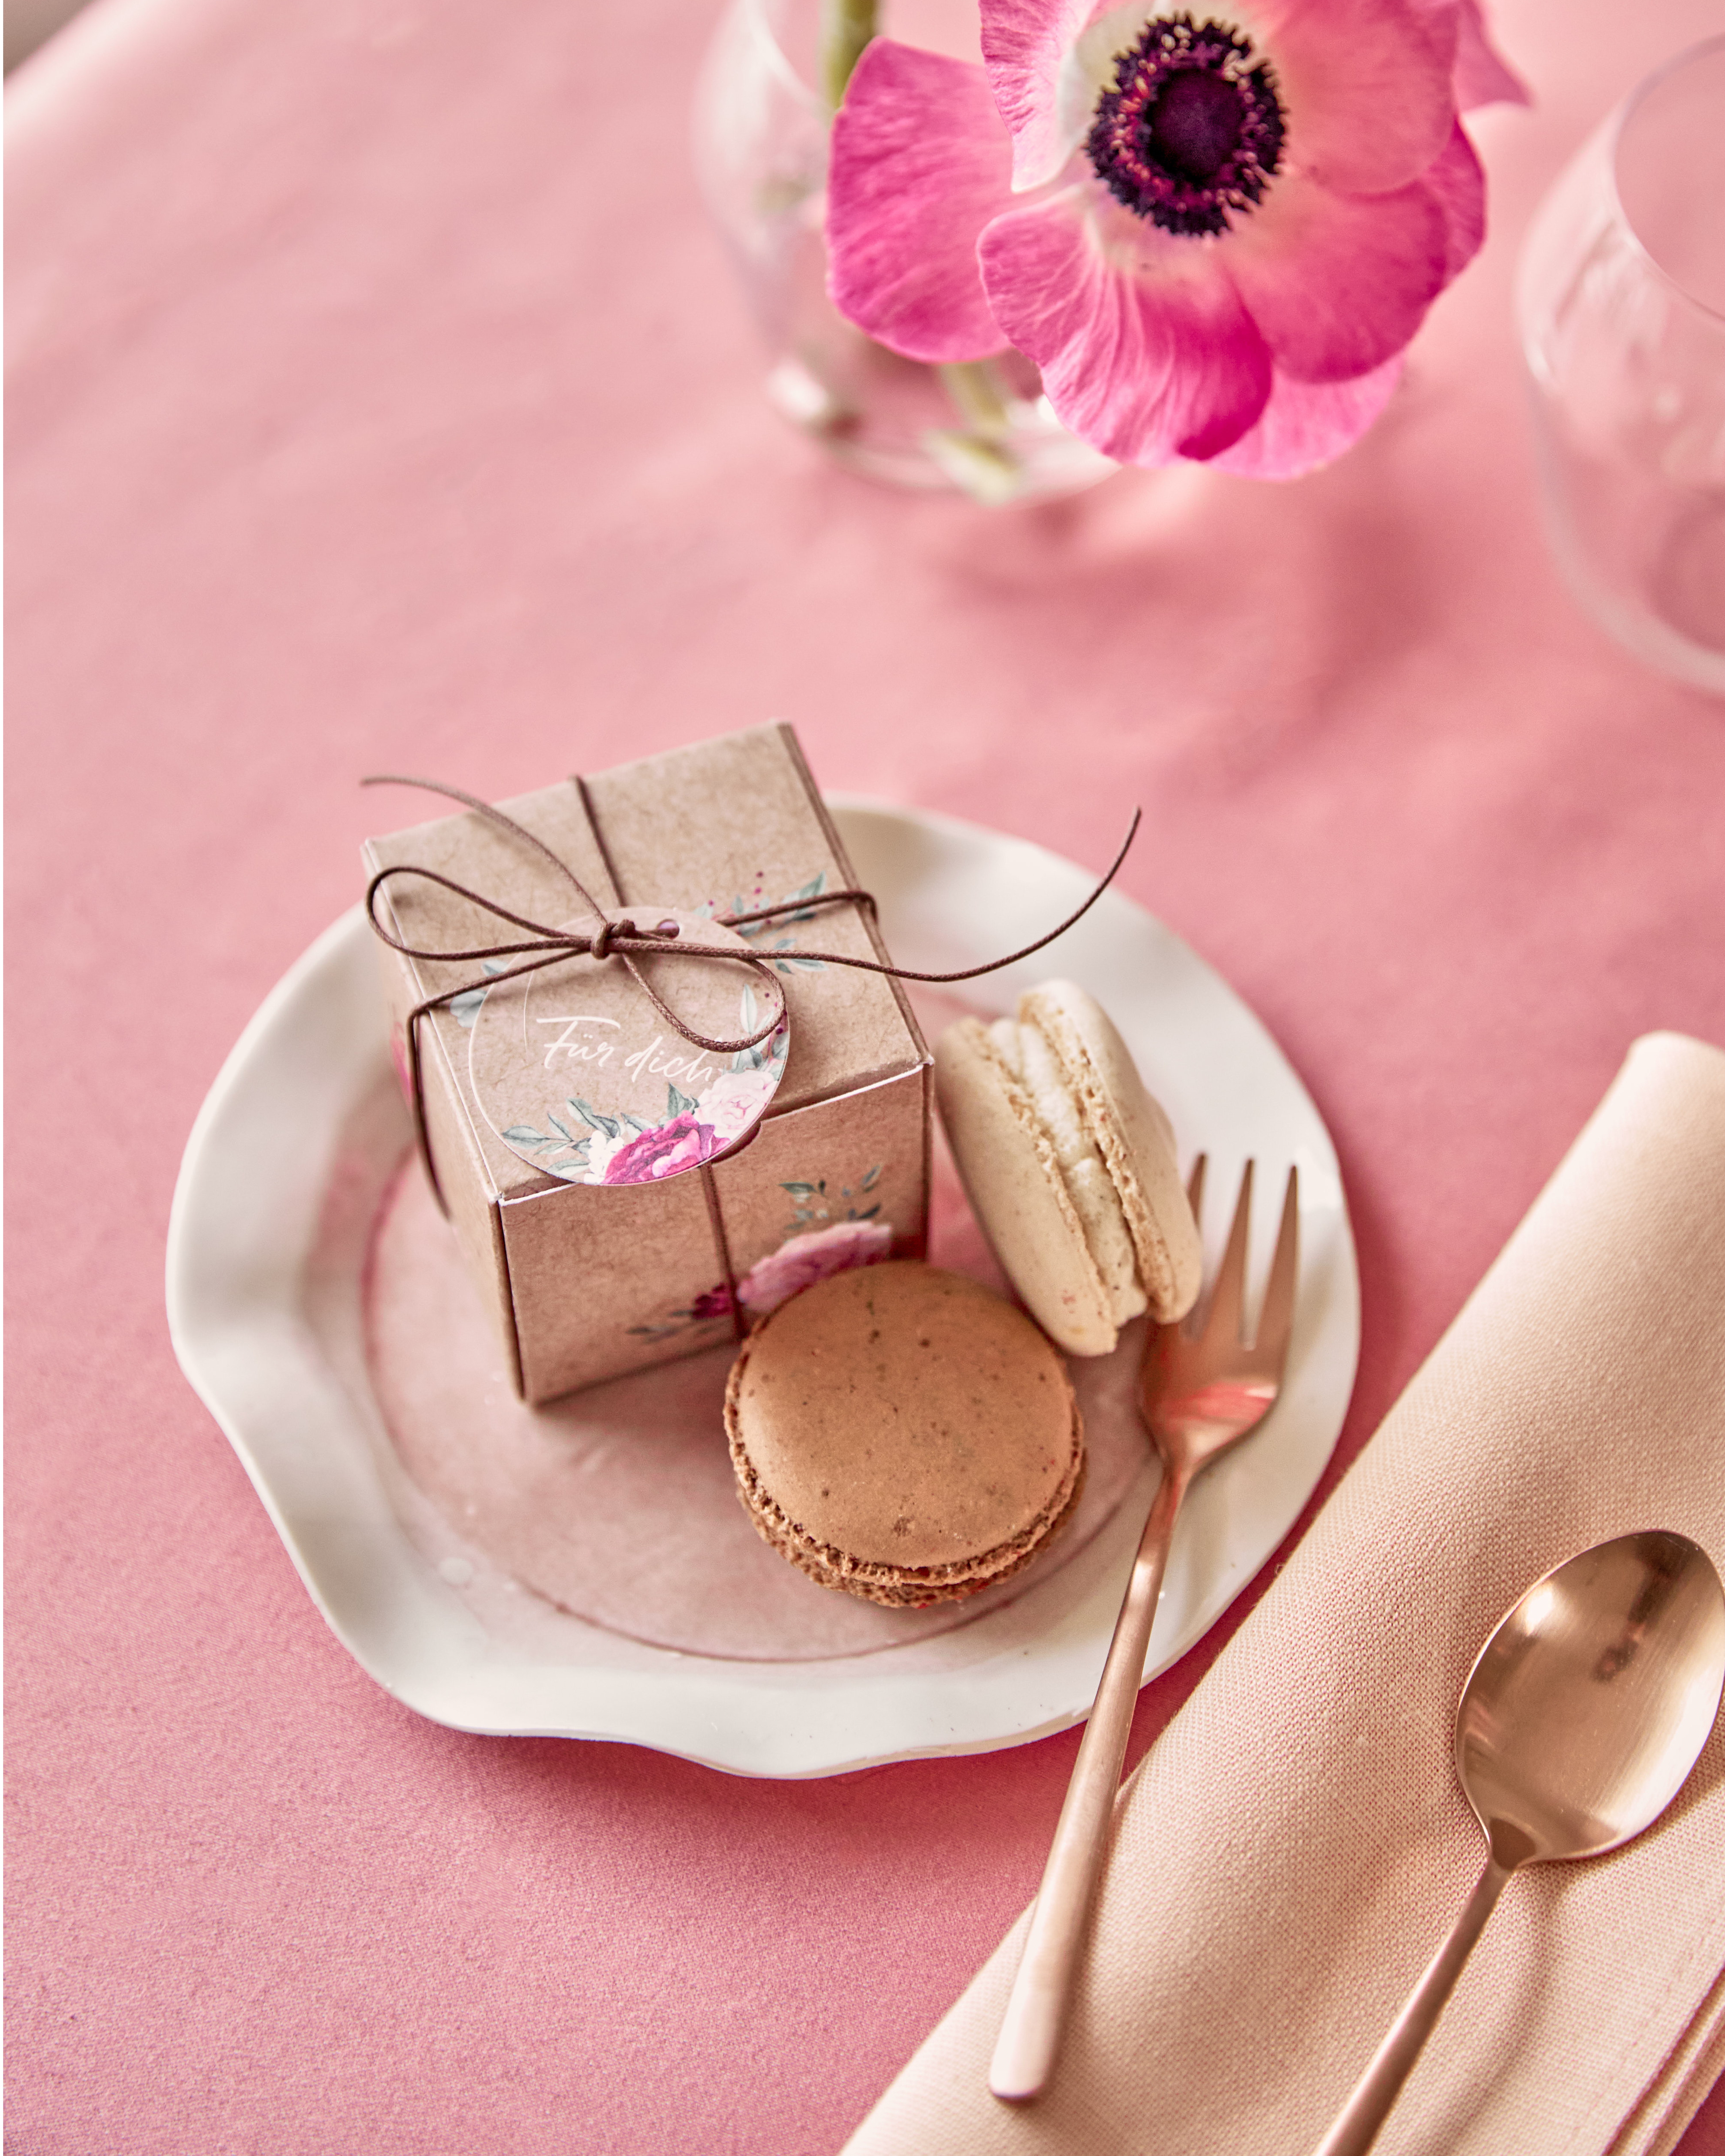 Gastgeschenkbox im Kraftpapierlook mit Blumendesign auf einem Teller mit Macarons